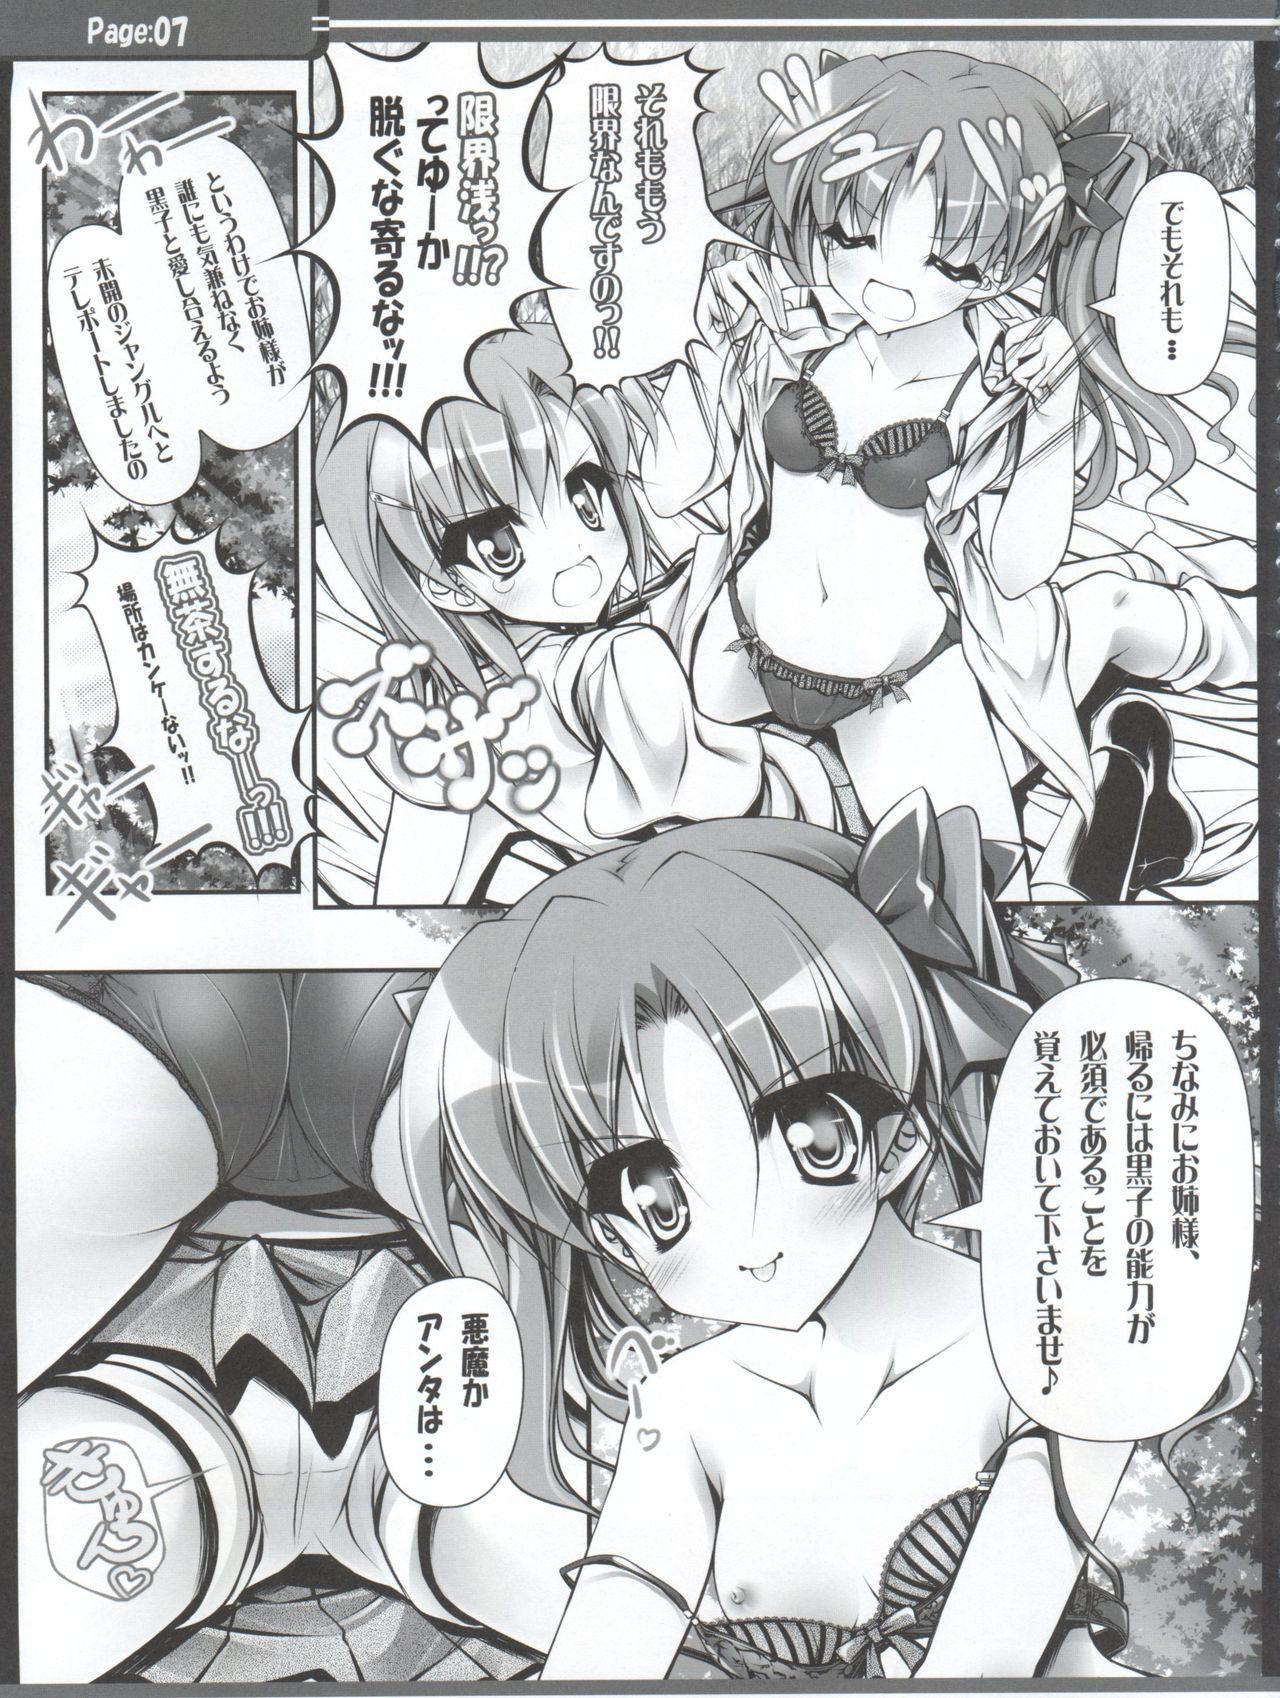 Bra Sunao na Onee-sama wa Suki desu ka? - Toaru kagaku no railgun Gay Shorthair - Page 8